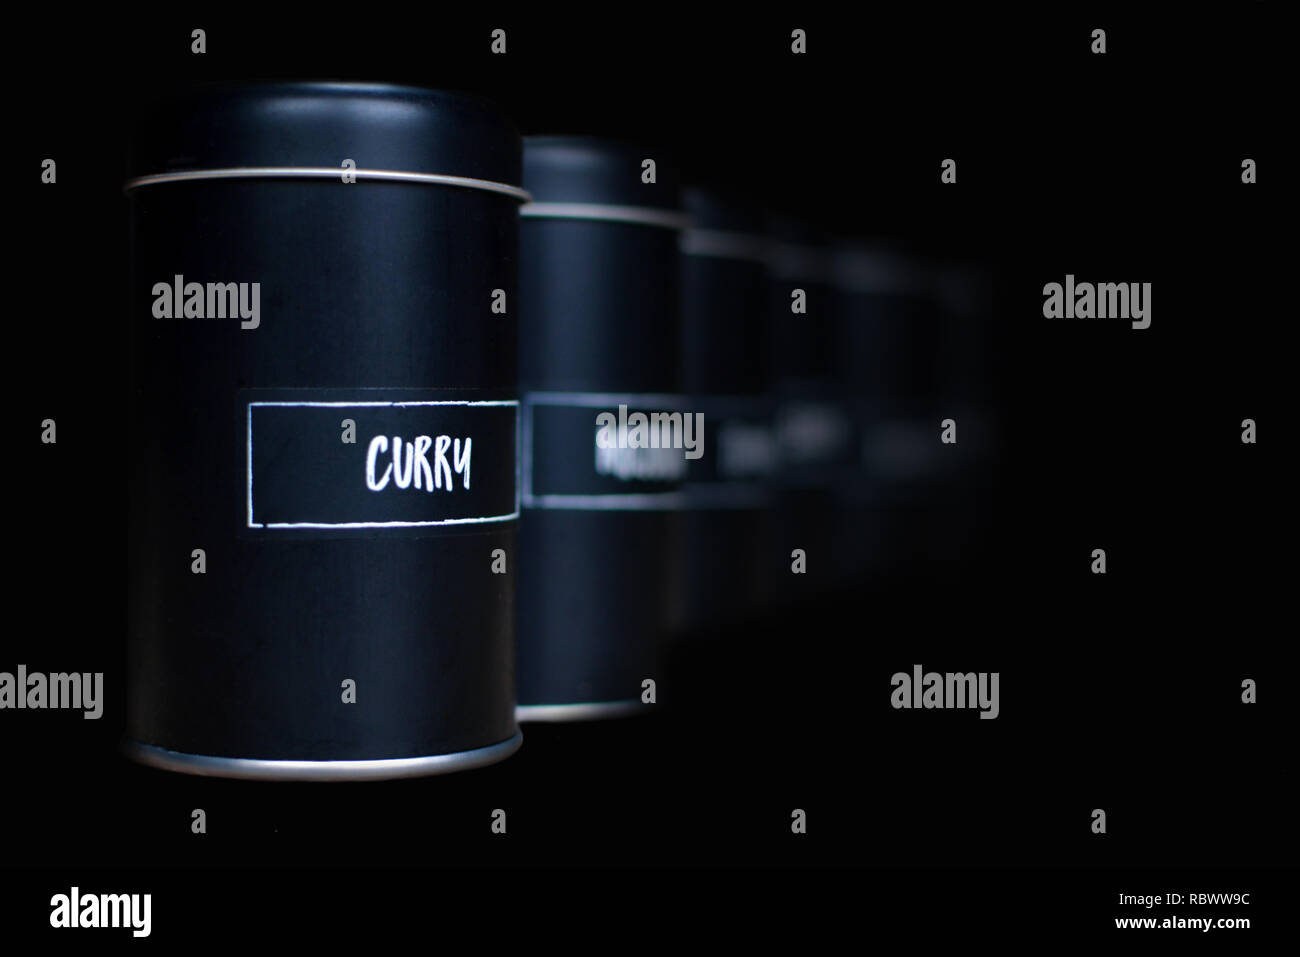 Anderen schwarz Spice Shakers in einer Zeile ausblenden auf dunklem Hintergrund mit weißem Label Curry auf der Vorderseite Stockfoto